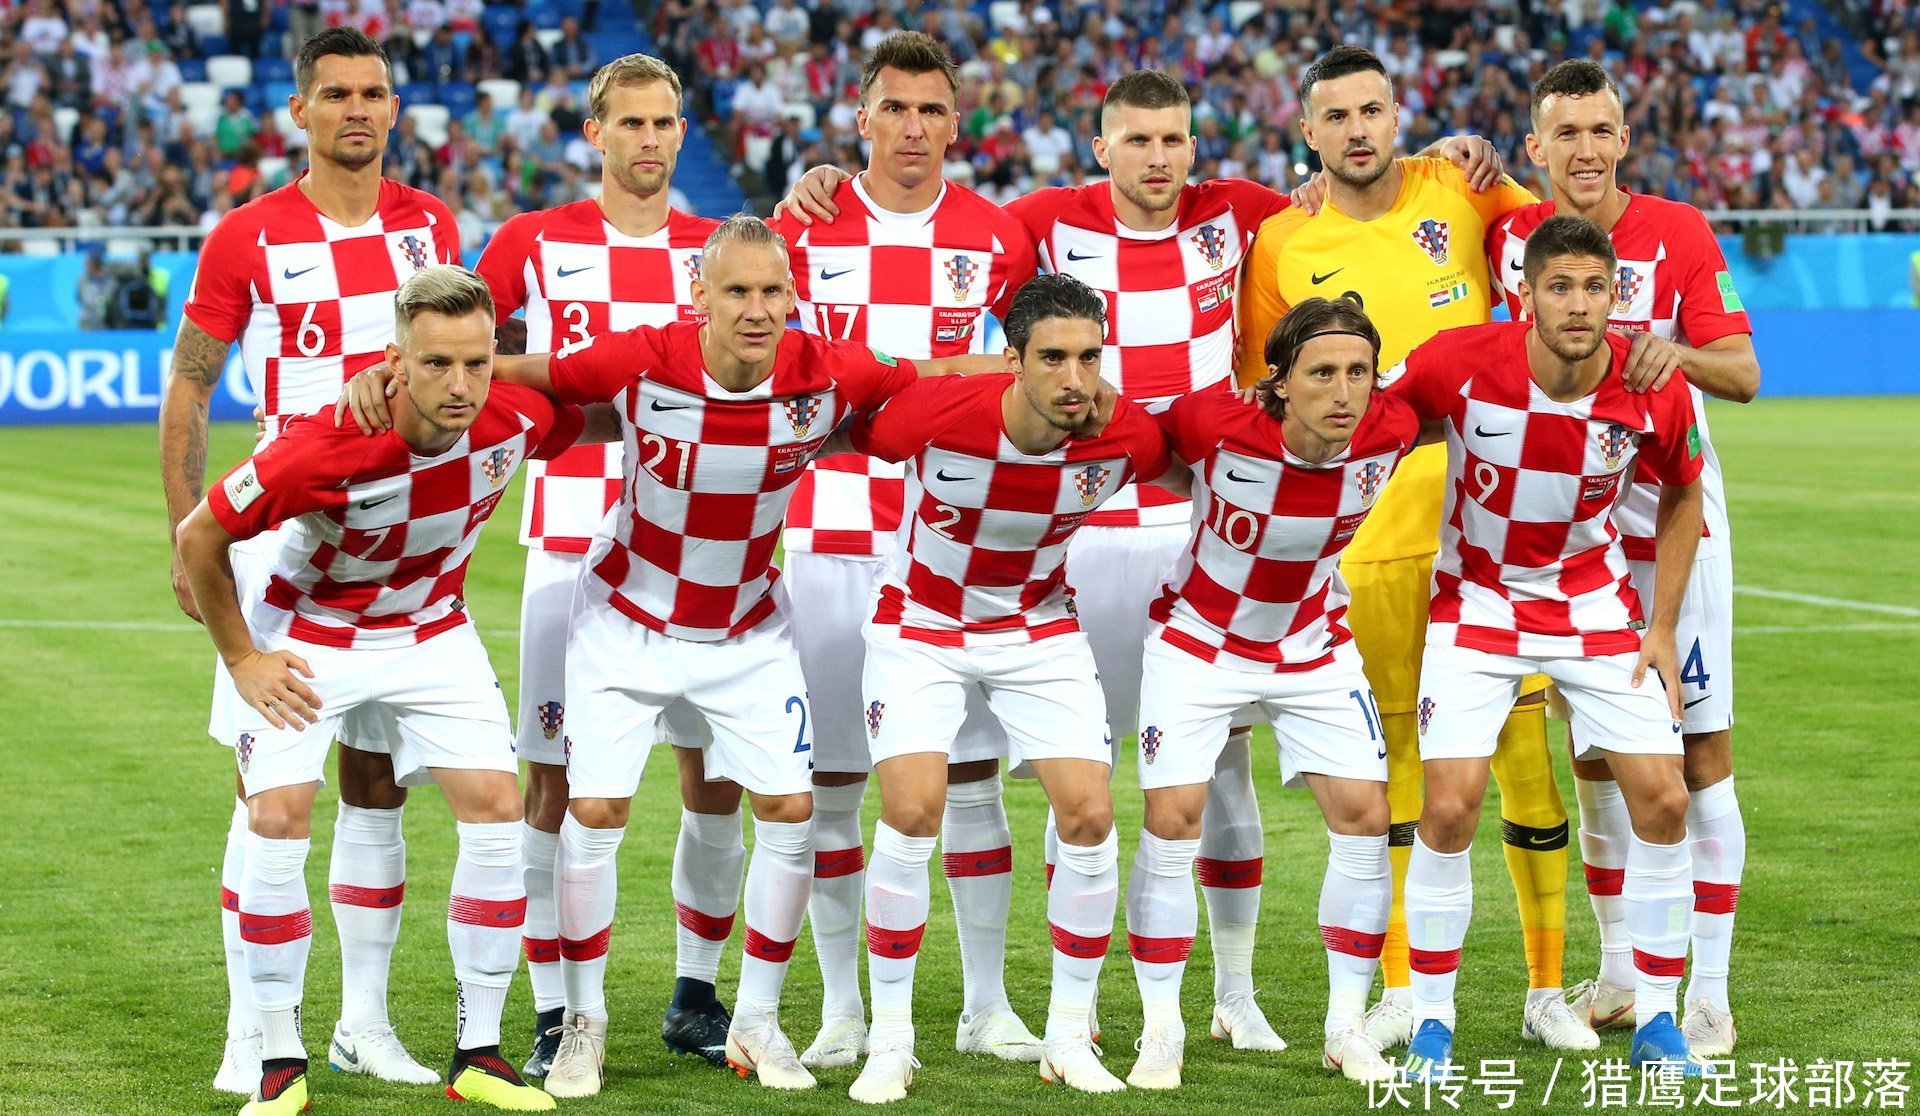 克罗地亚掀起 足球热 ,国内如有此氛围,何愁国足